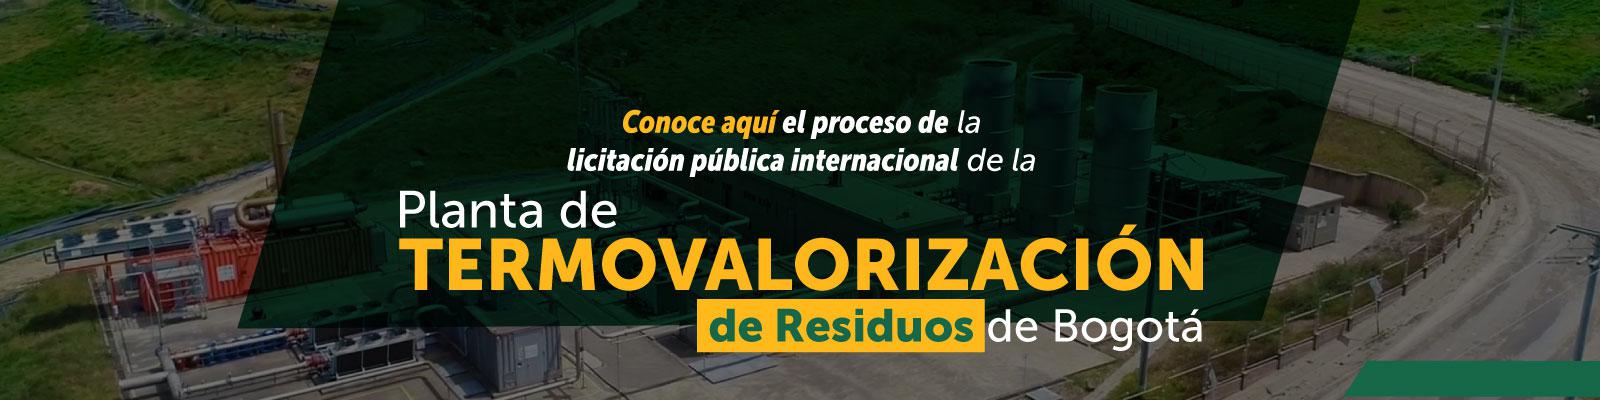 Licitación pública internacional Planta de Termovalorización de Residuos de Bogotá